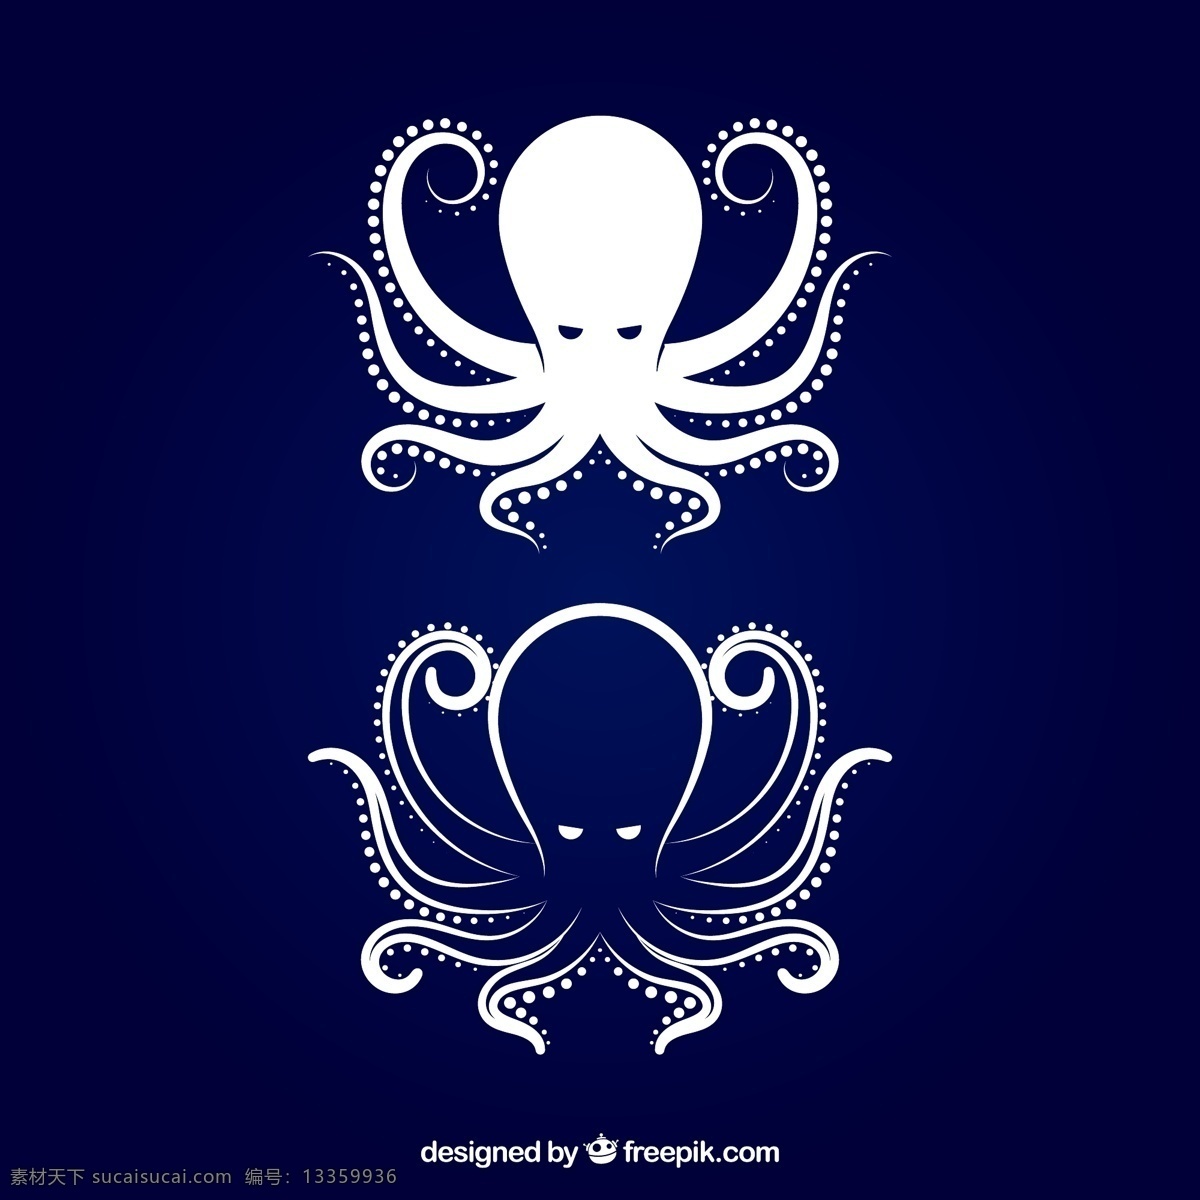 创意 章鱼 矢量 海洋动物 八爪鱼 矢量图 创意设计